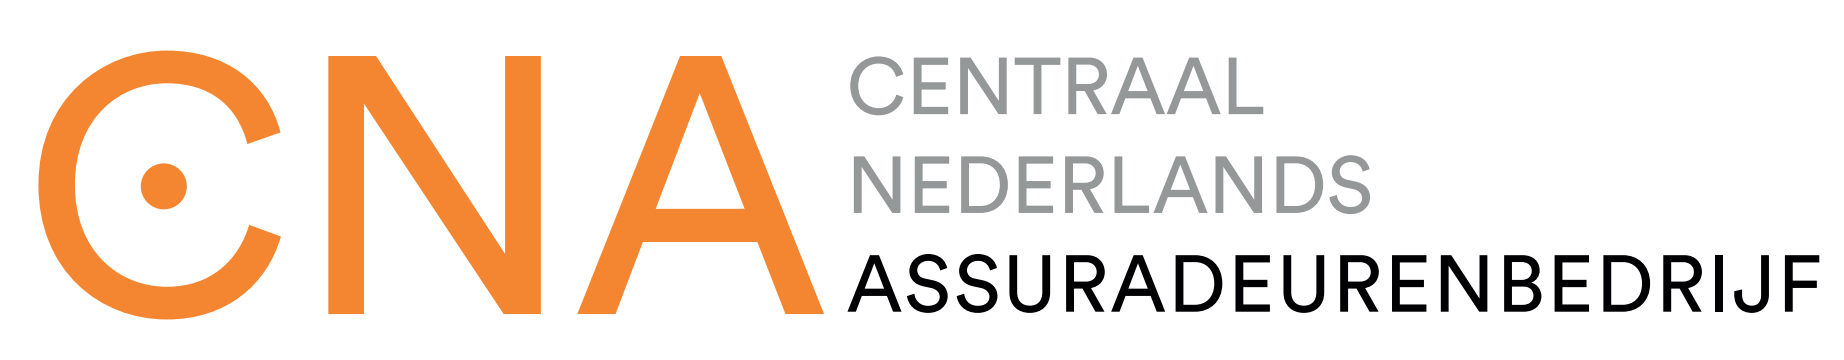 logo van Centraal Nederlands Assuradeurenbedrijf